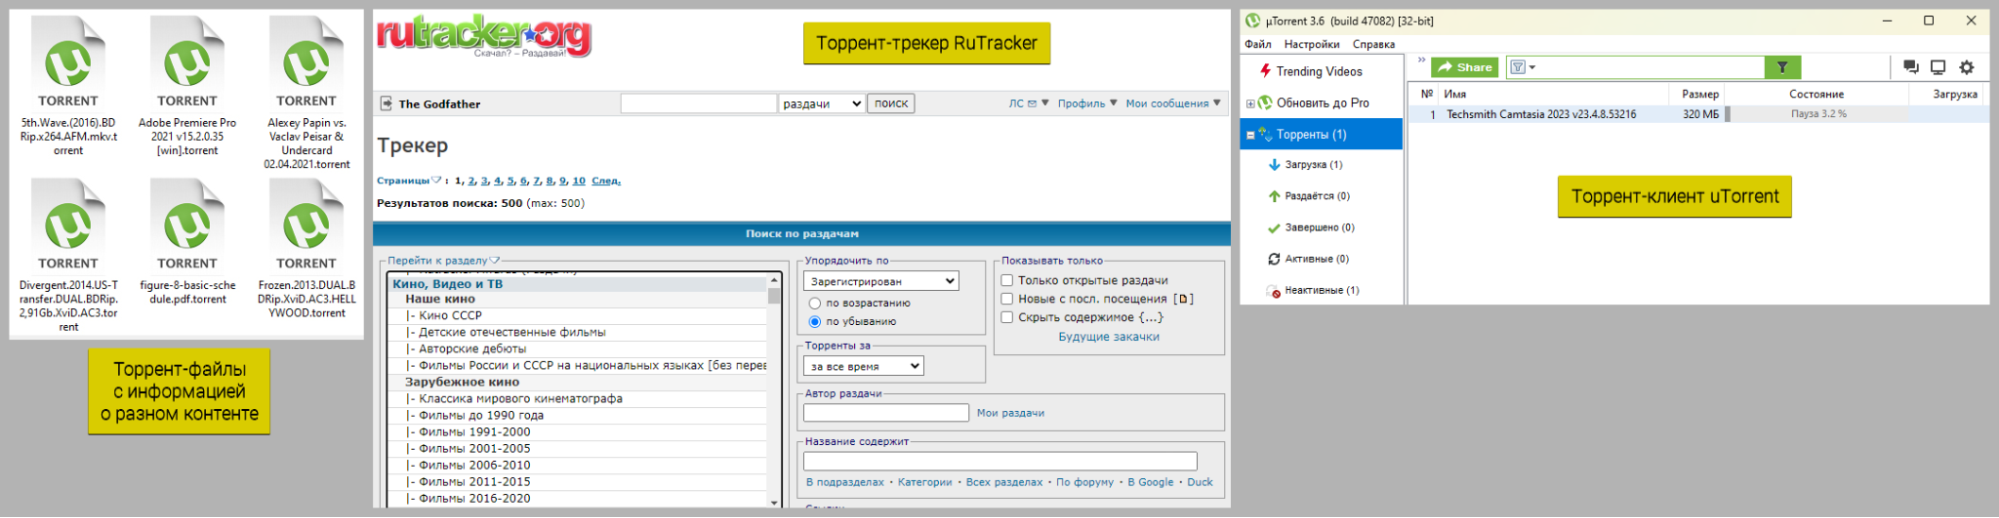 Примеры, как выглядят торрент-файлы в Windows, торрент-трекер RuTracker.org, окно торрент-клиента uTorrent.